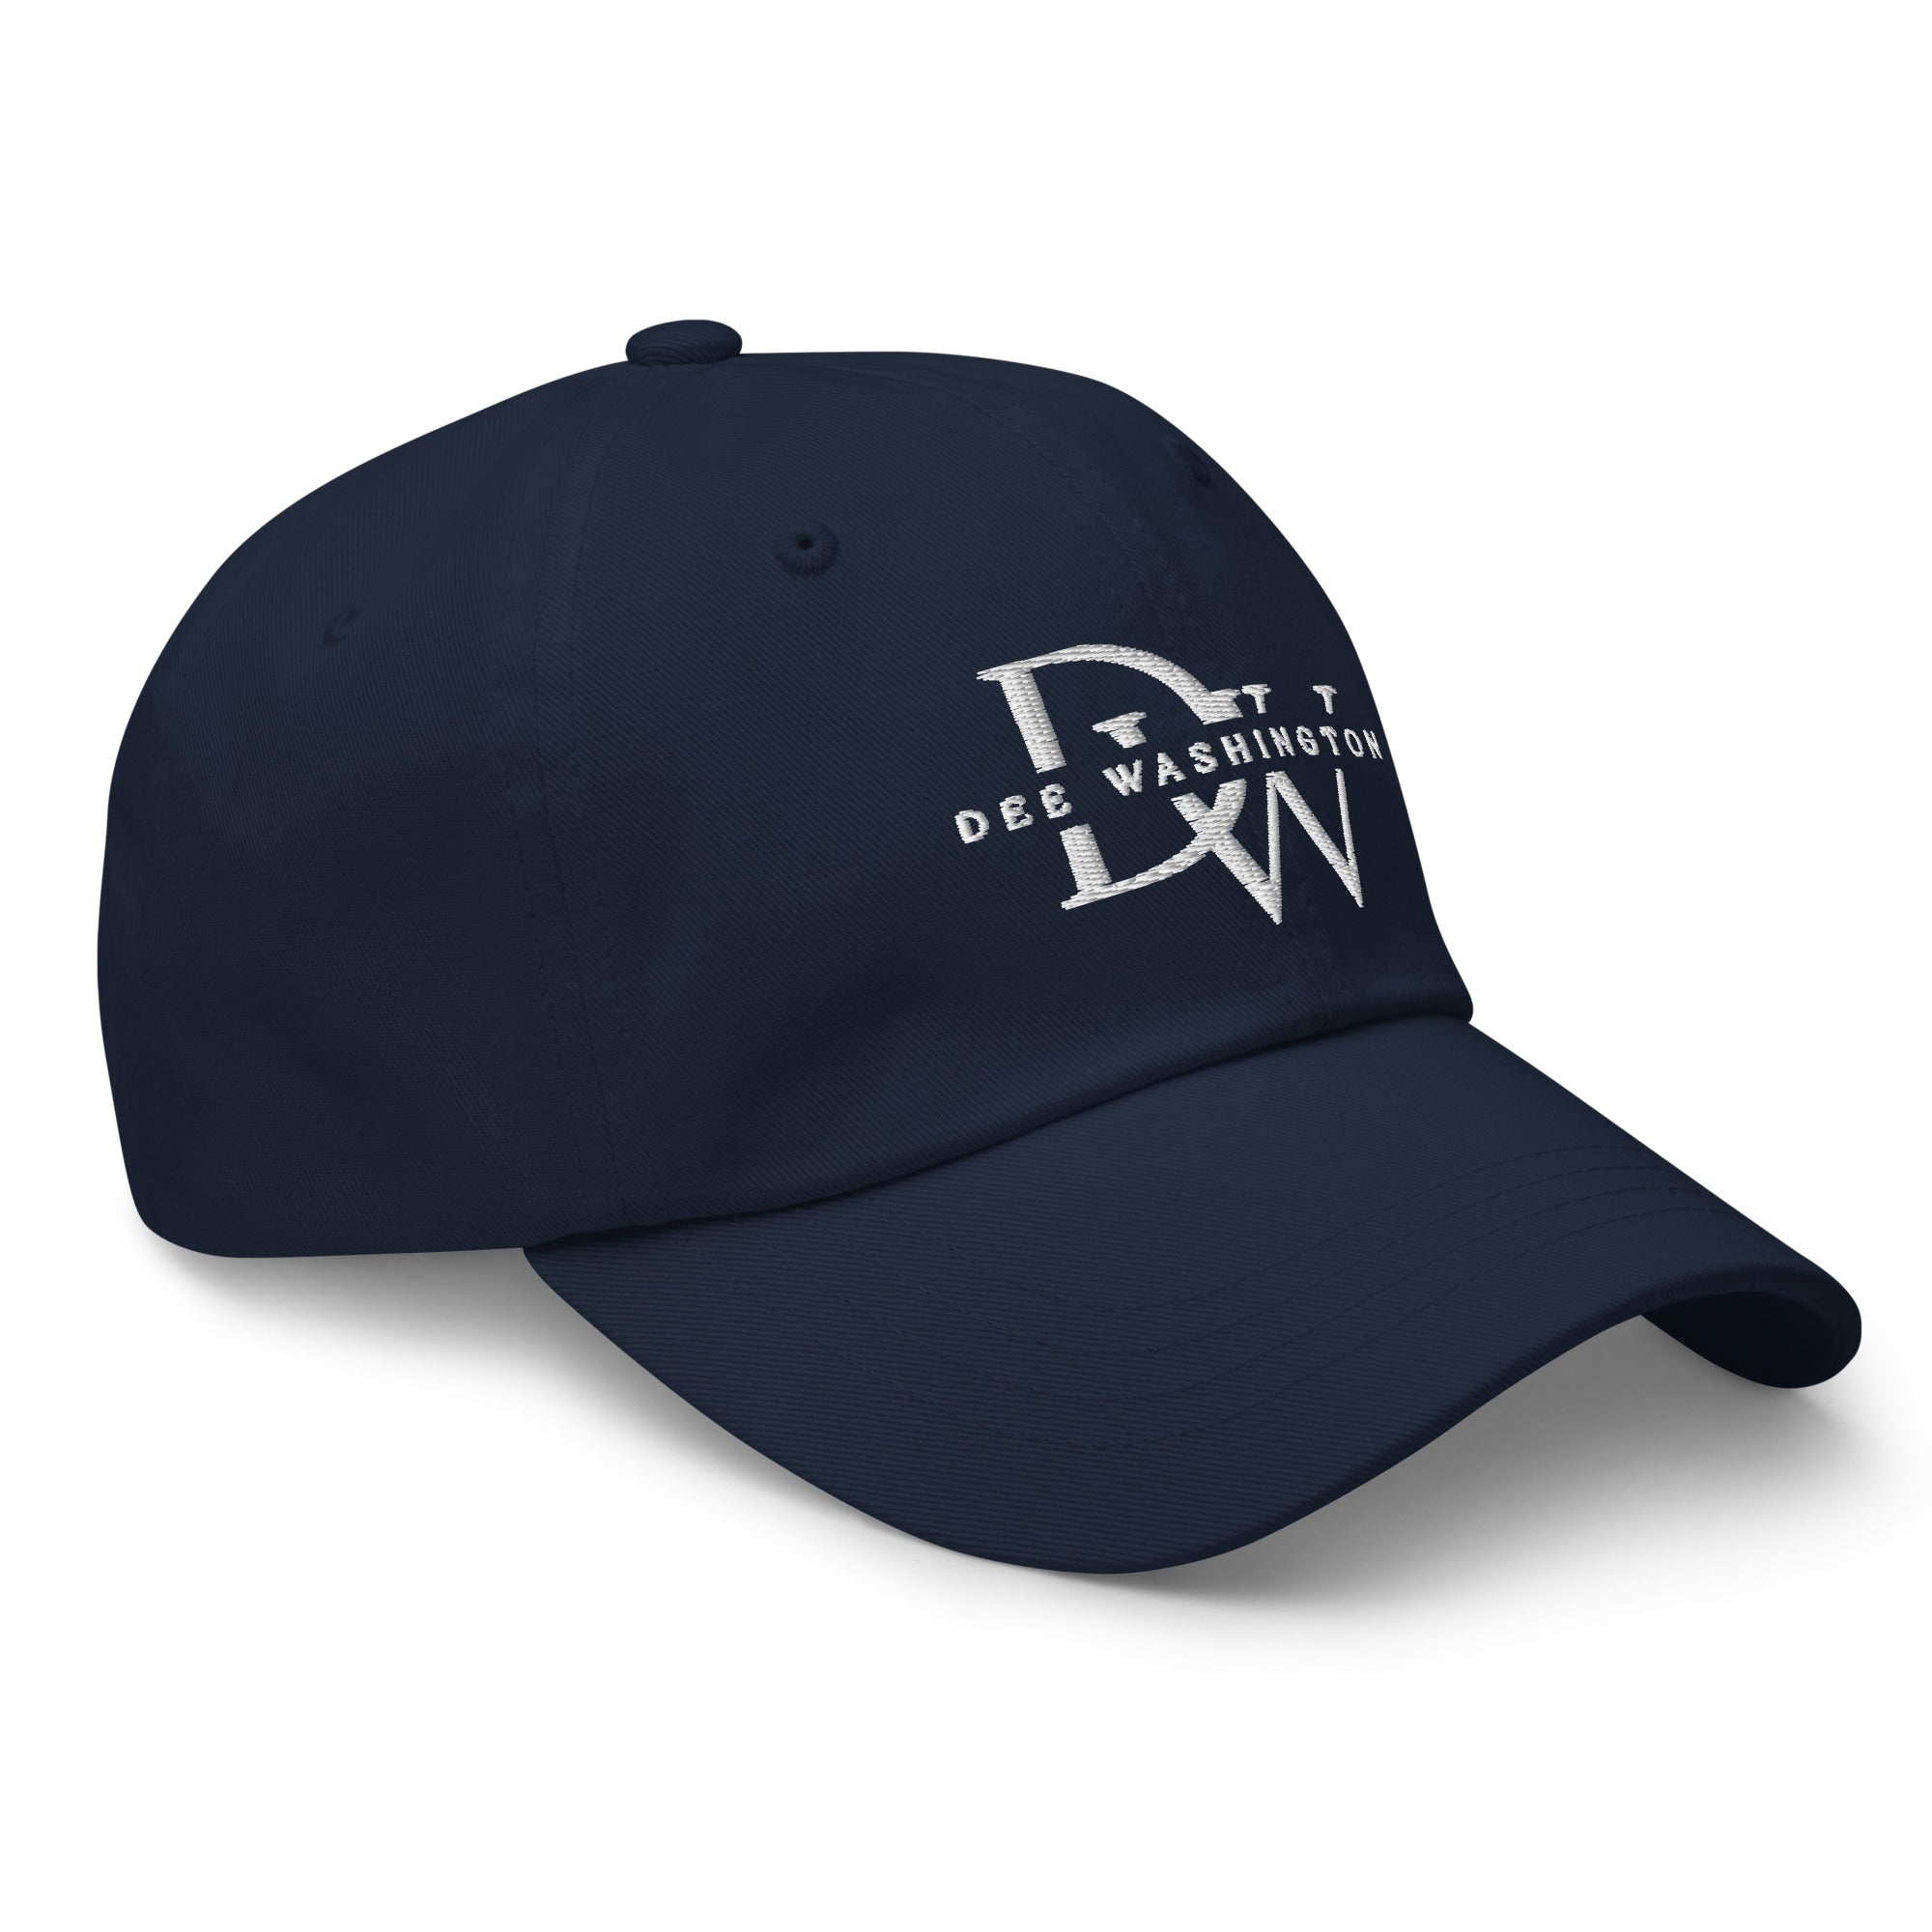 Dee Washington - Dad hat